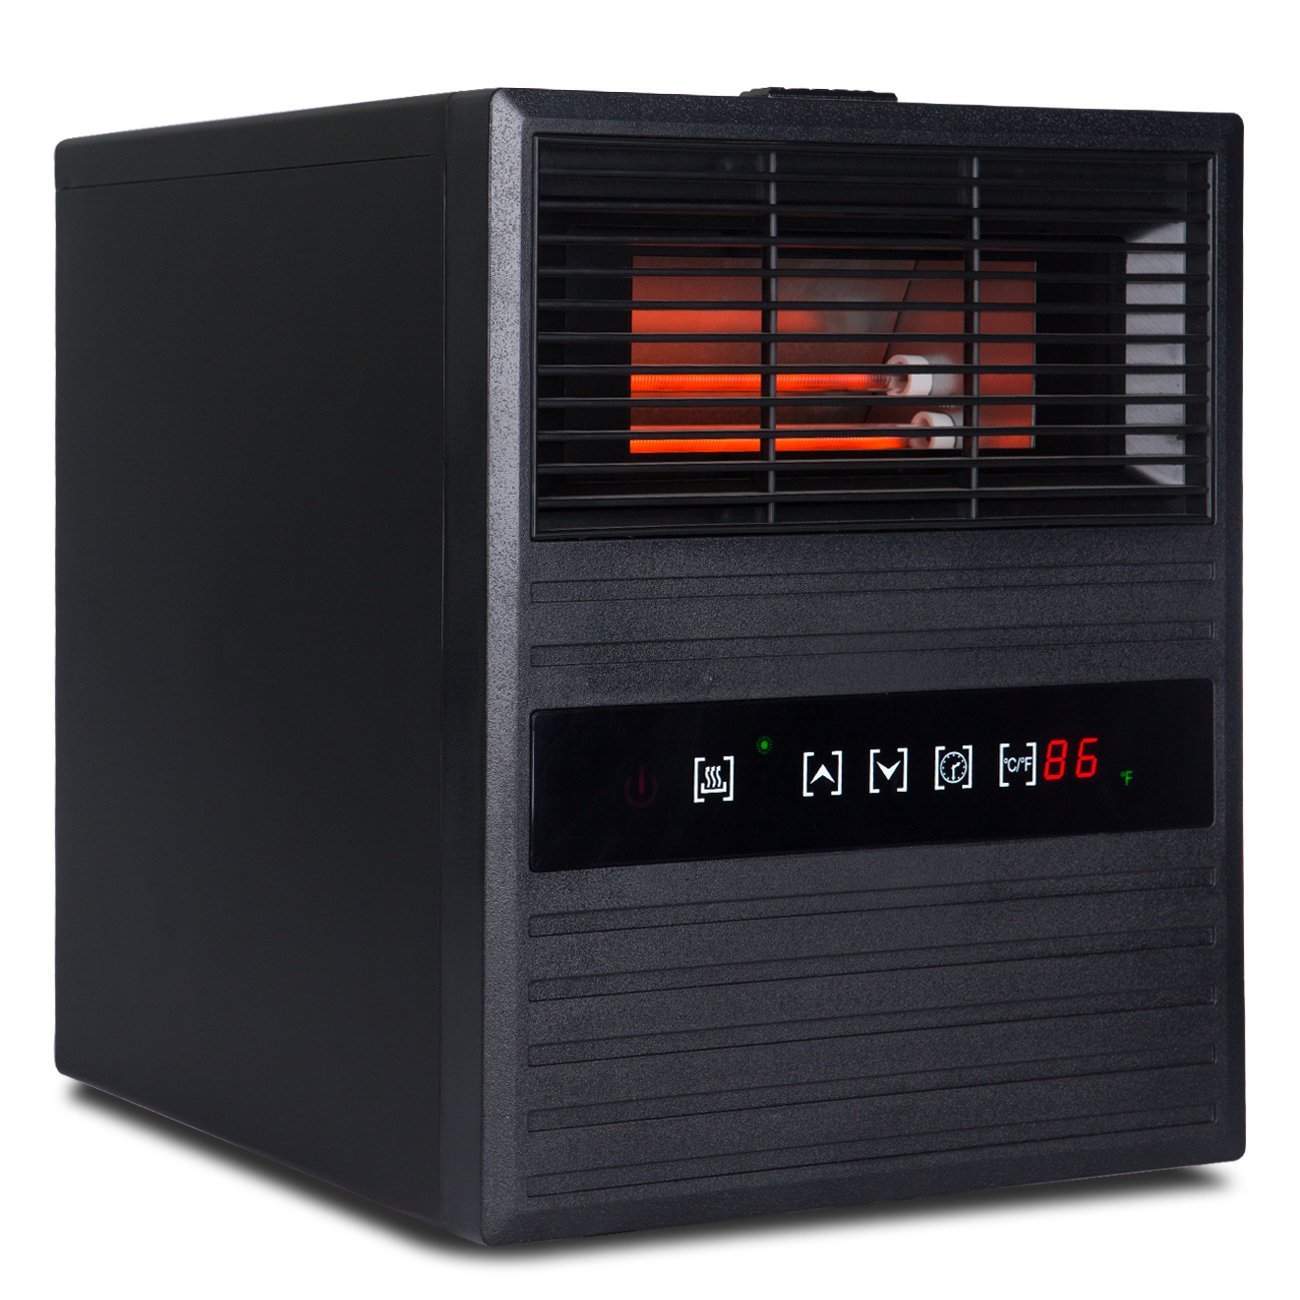 Della Portable Electric Infrared Quart Heater 1500watt with Remote Control and Wheels, 1500-Watt